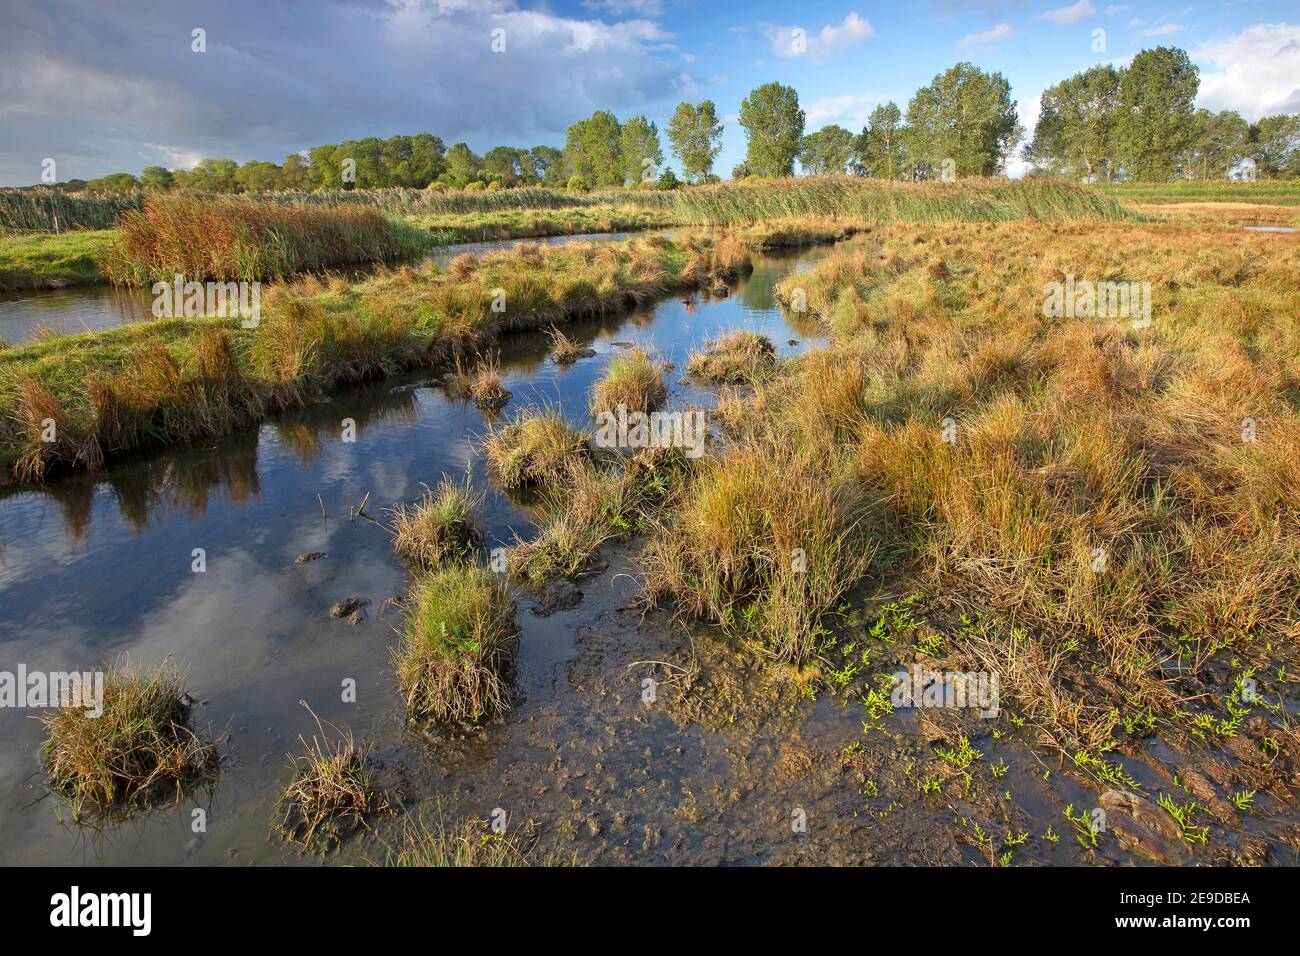 salt marshes in Dudzeelse Polder at Zeebrugge, Belgium, West Flanders, Dudzele, Zeebrugge Stock Photo